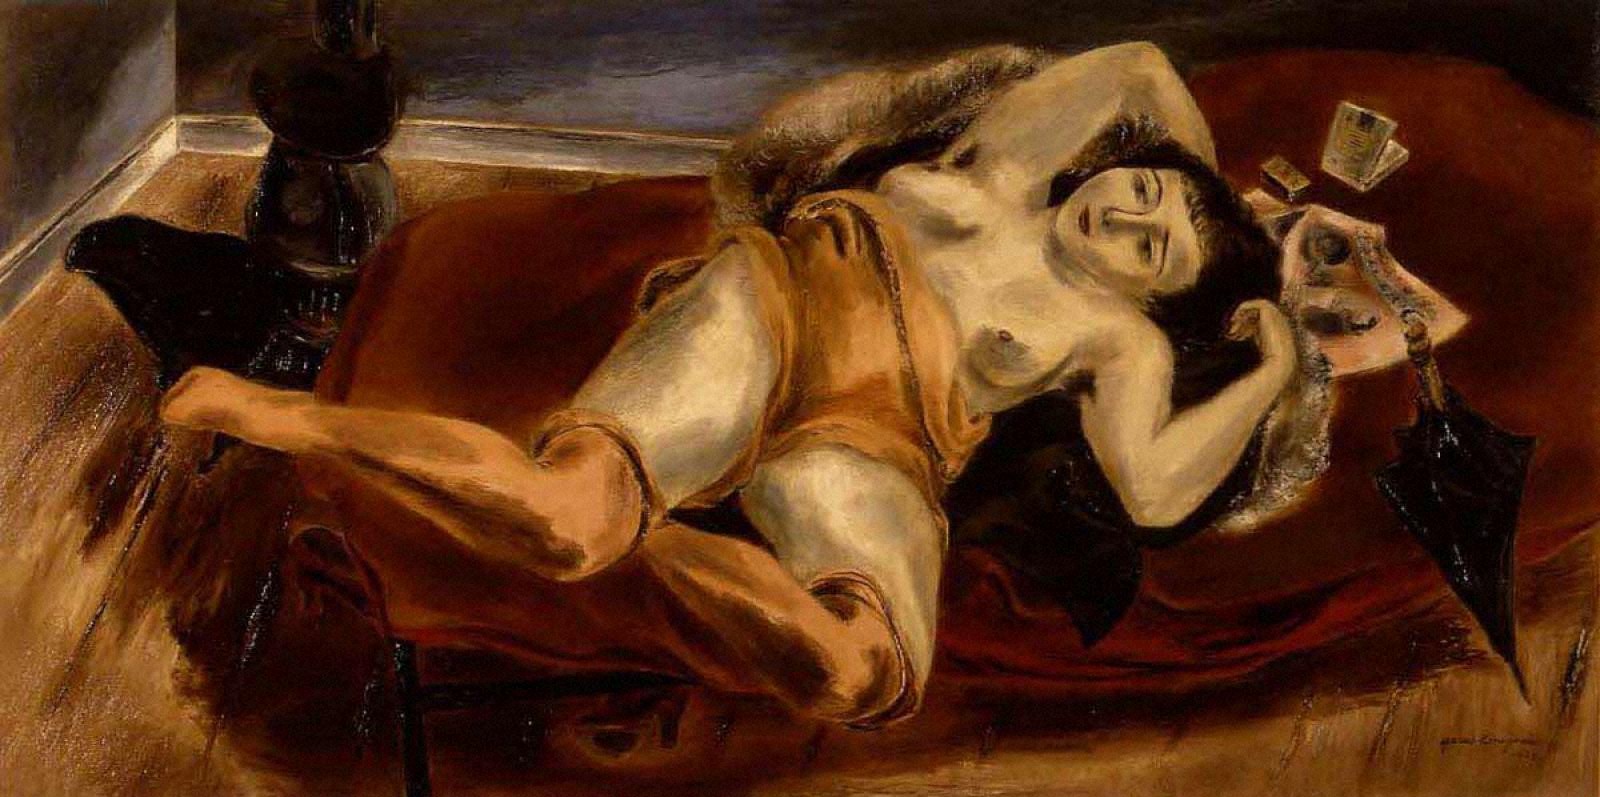 国吉康雄《横たわる裸婦》1929年、当館蔵